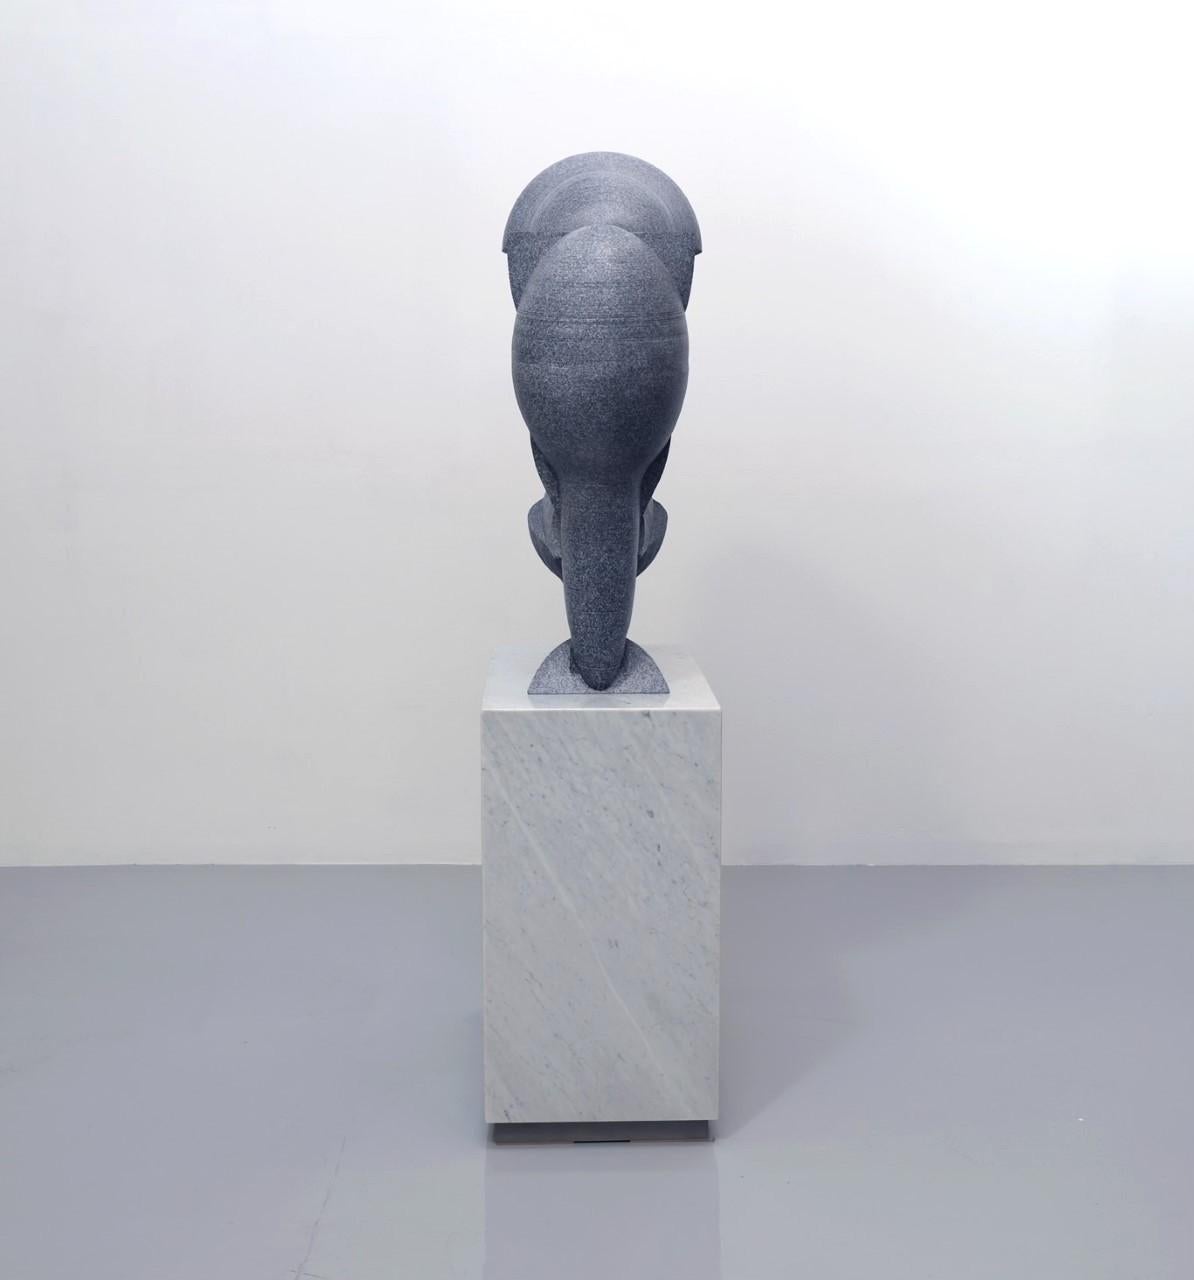 Perception - Sculpture by Roger Reutimann